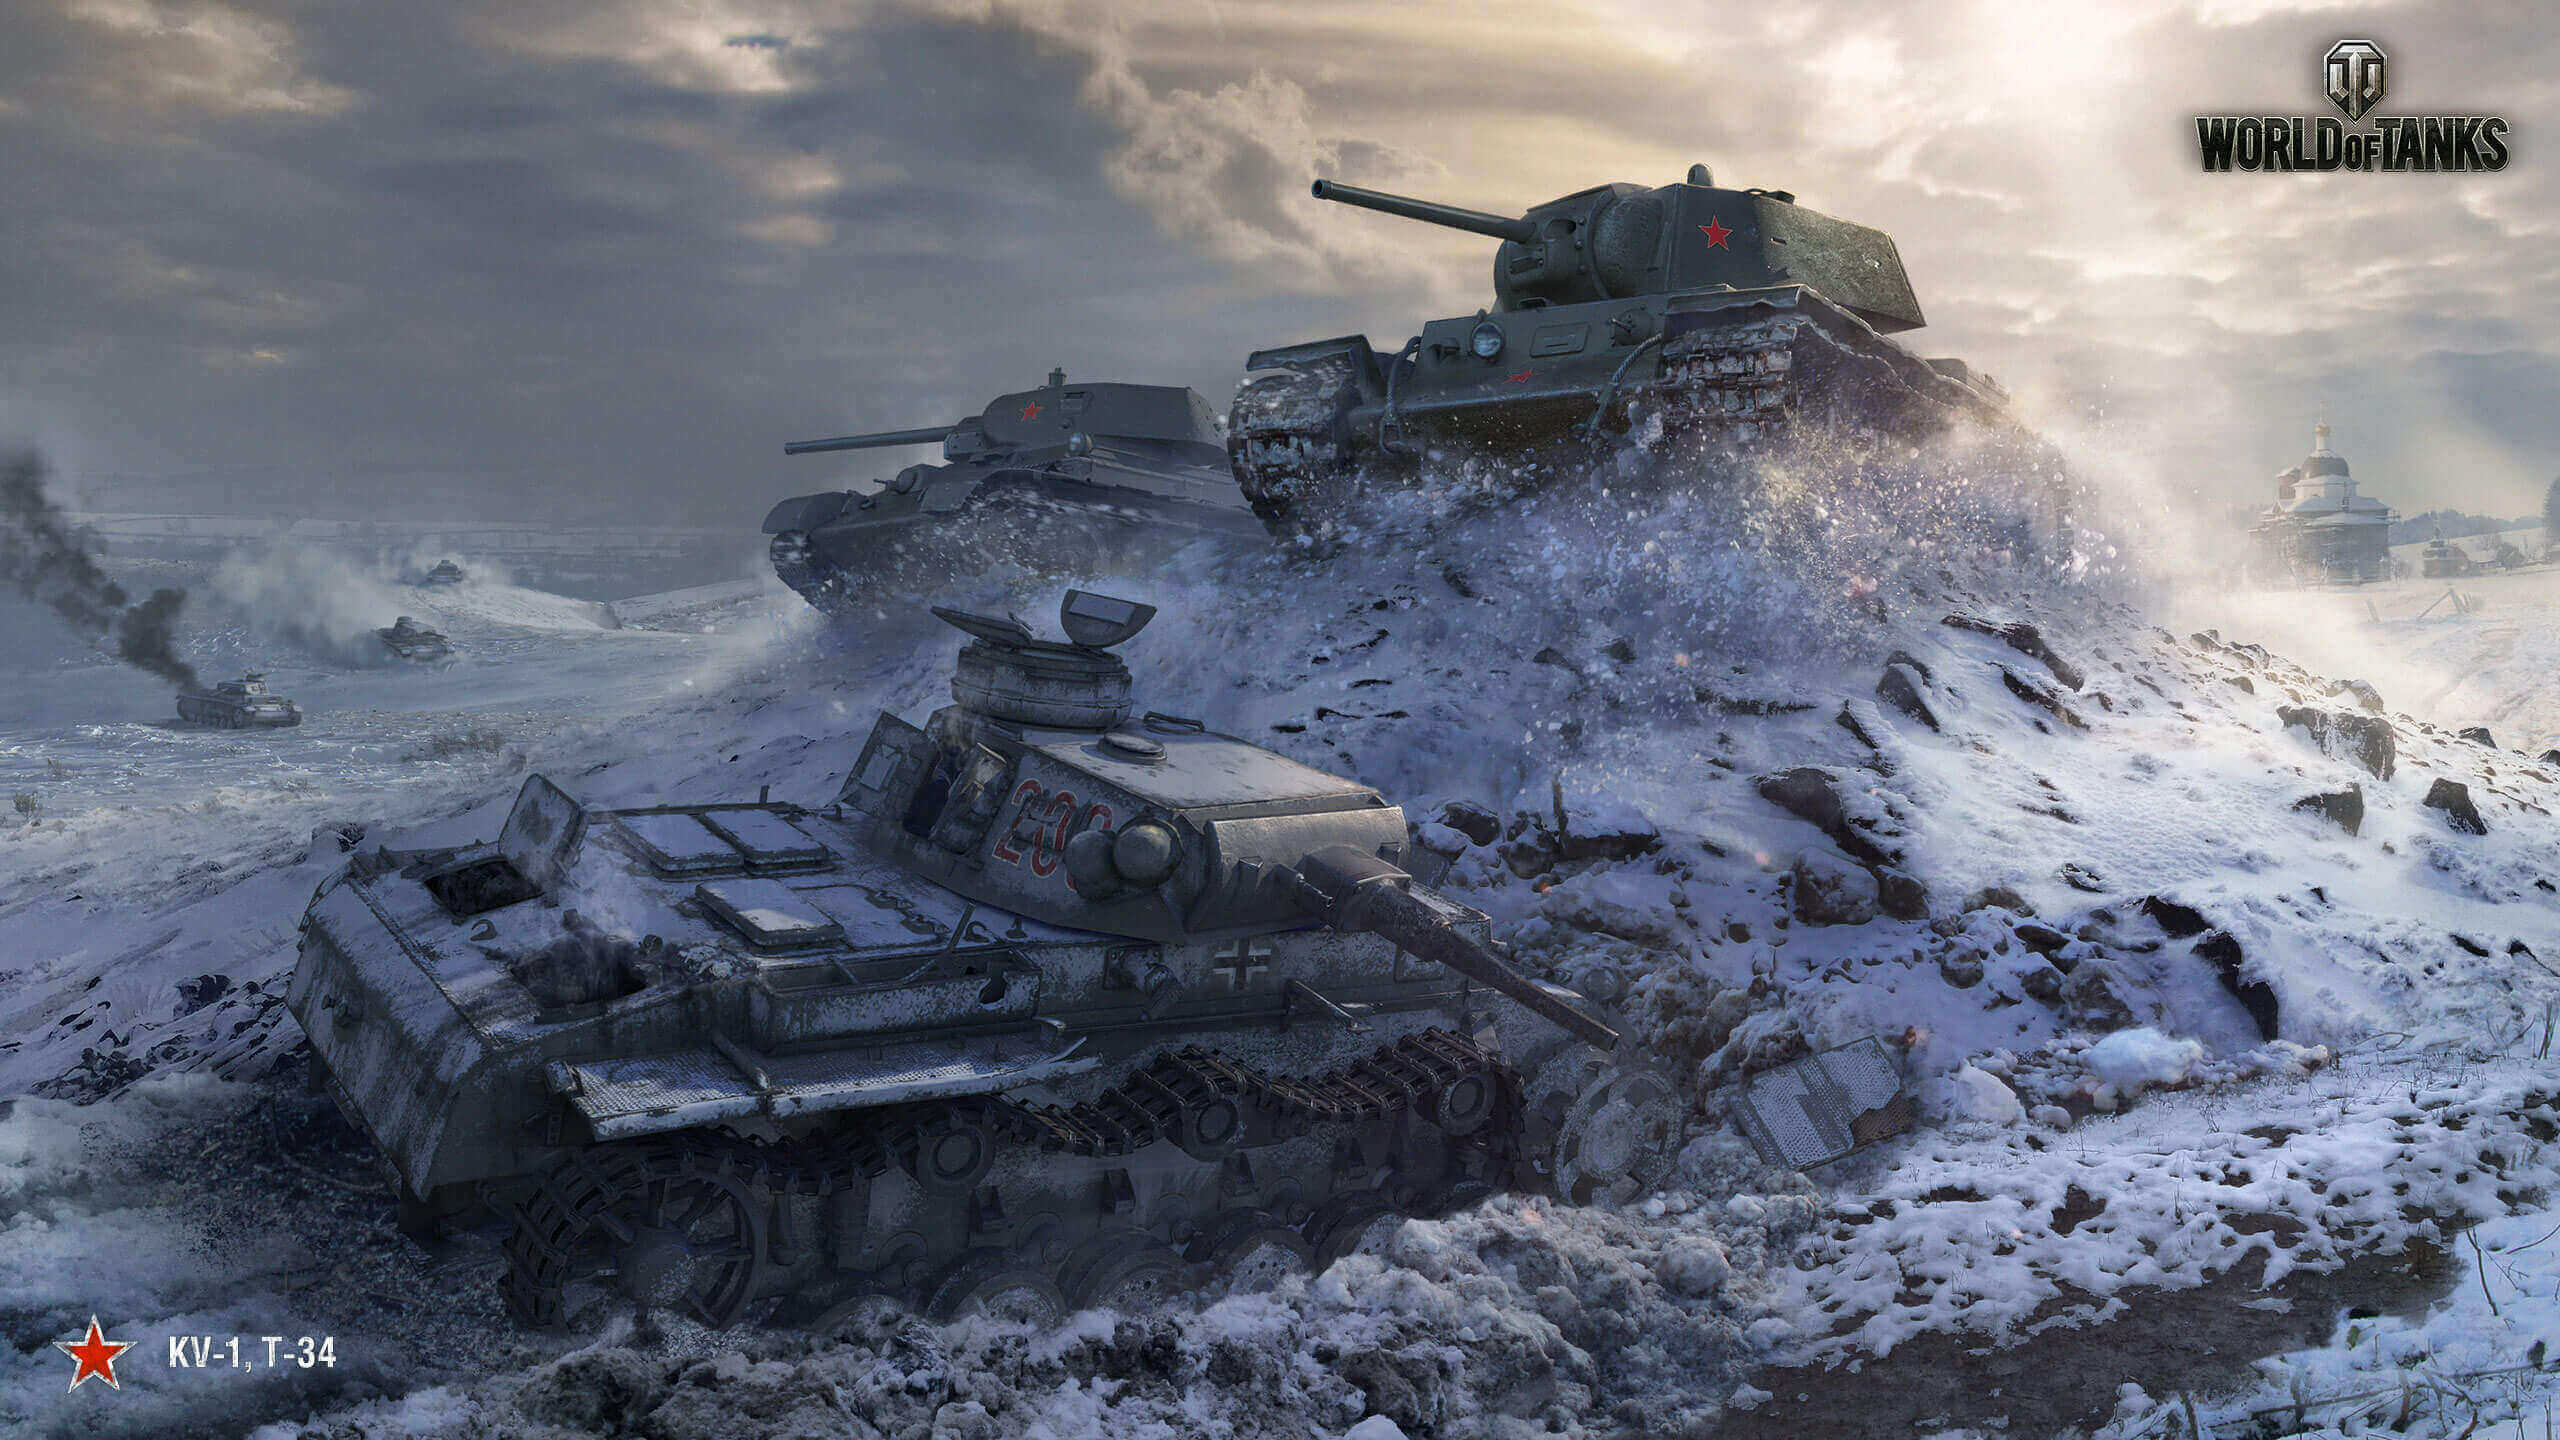 17年 10月 壁紙 ソ連の哨兵 戦車 World Of Tanks メディア 最高のビデオやアートワーク